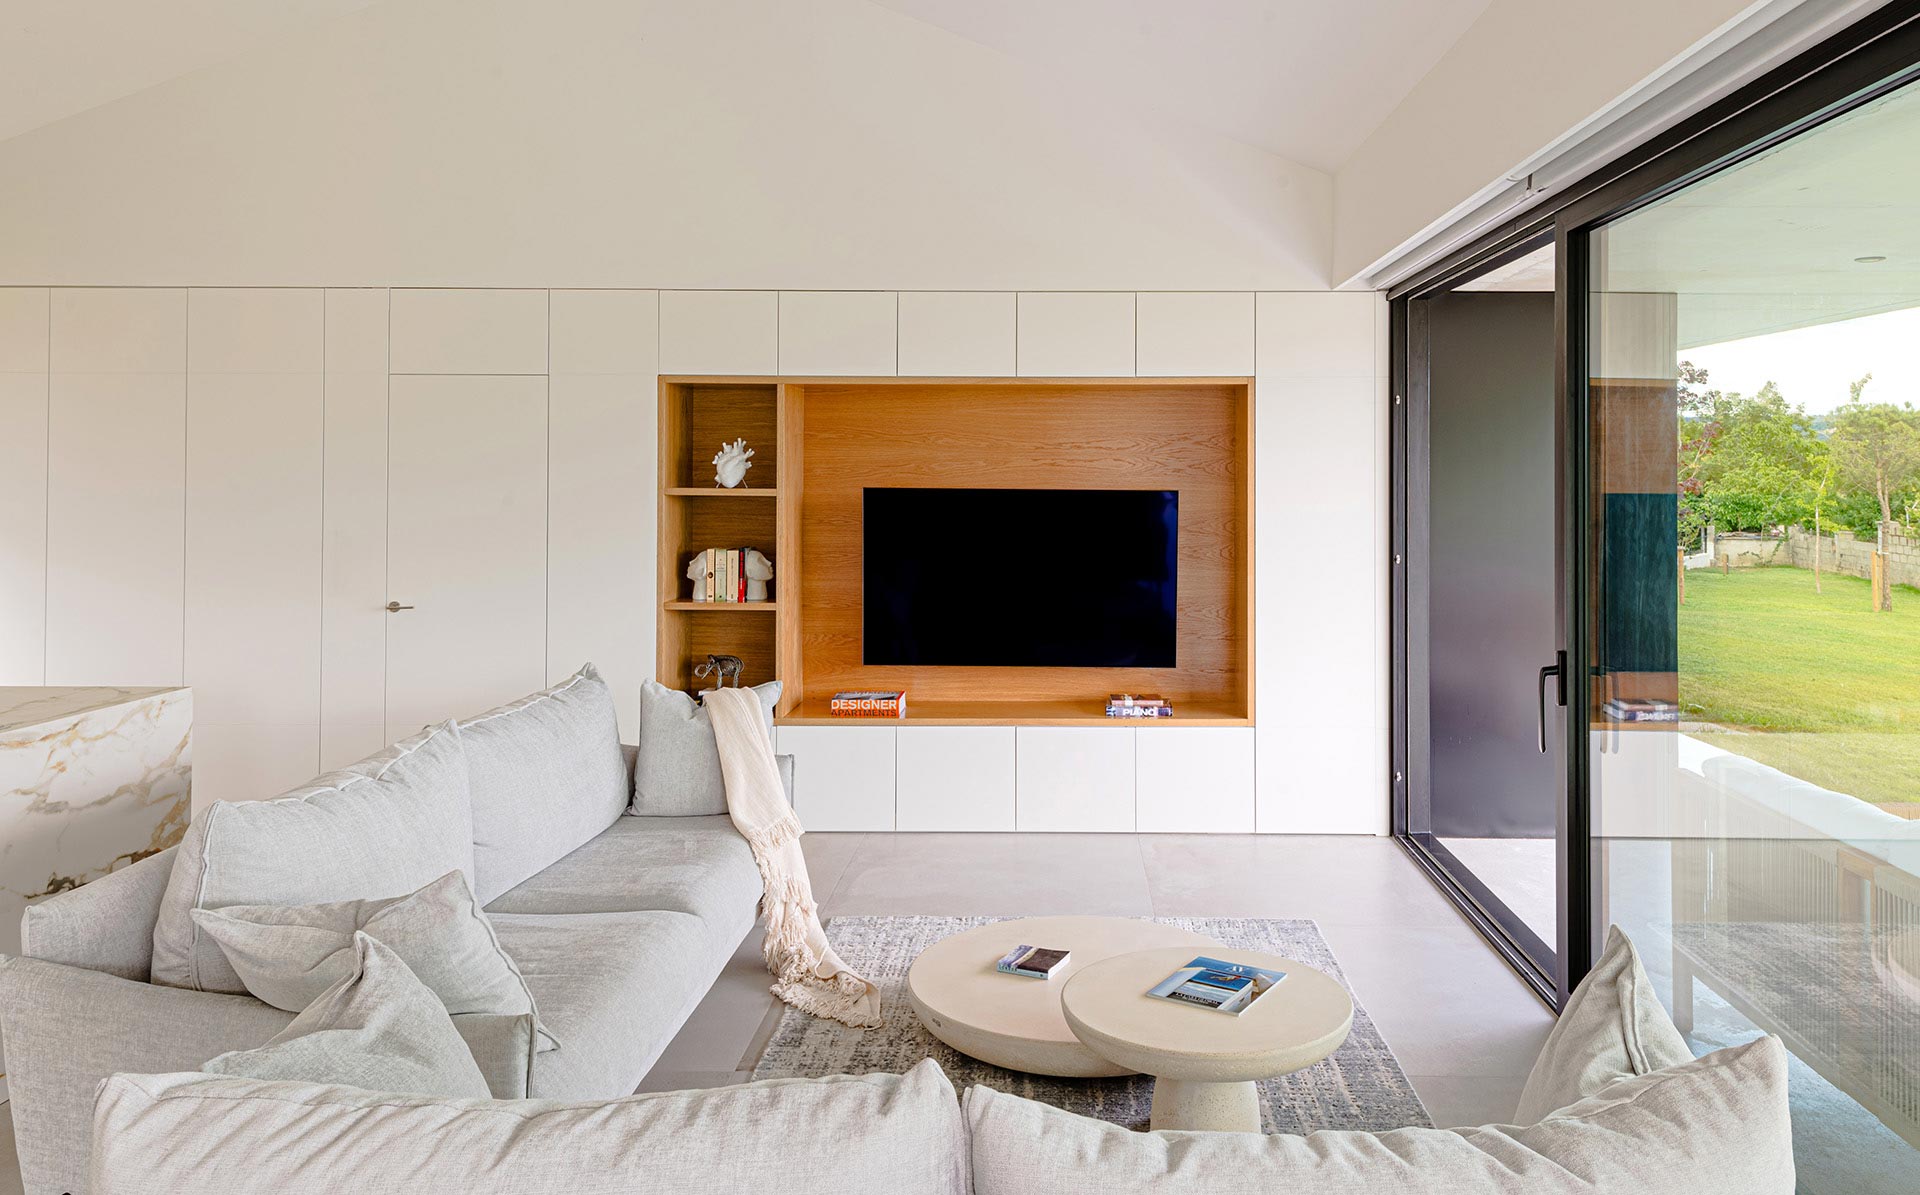 Diseño interior de salón de casa moderna diseñada por Moah Arquitectos en Suesa. Cantabria.